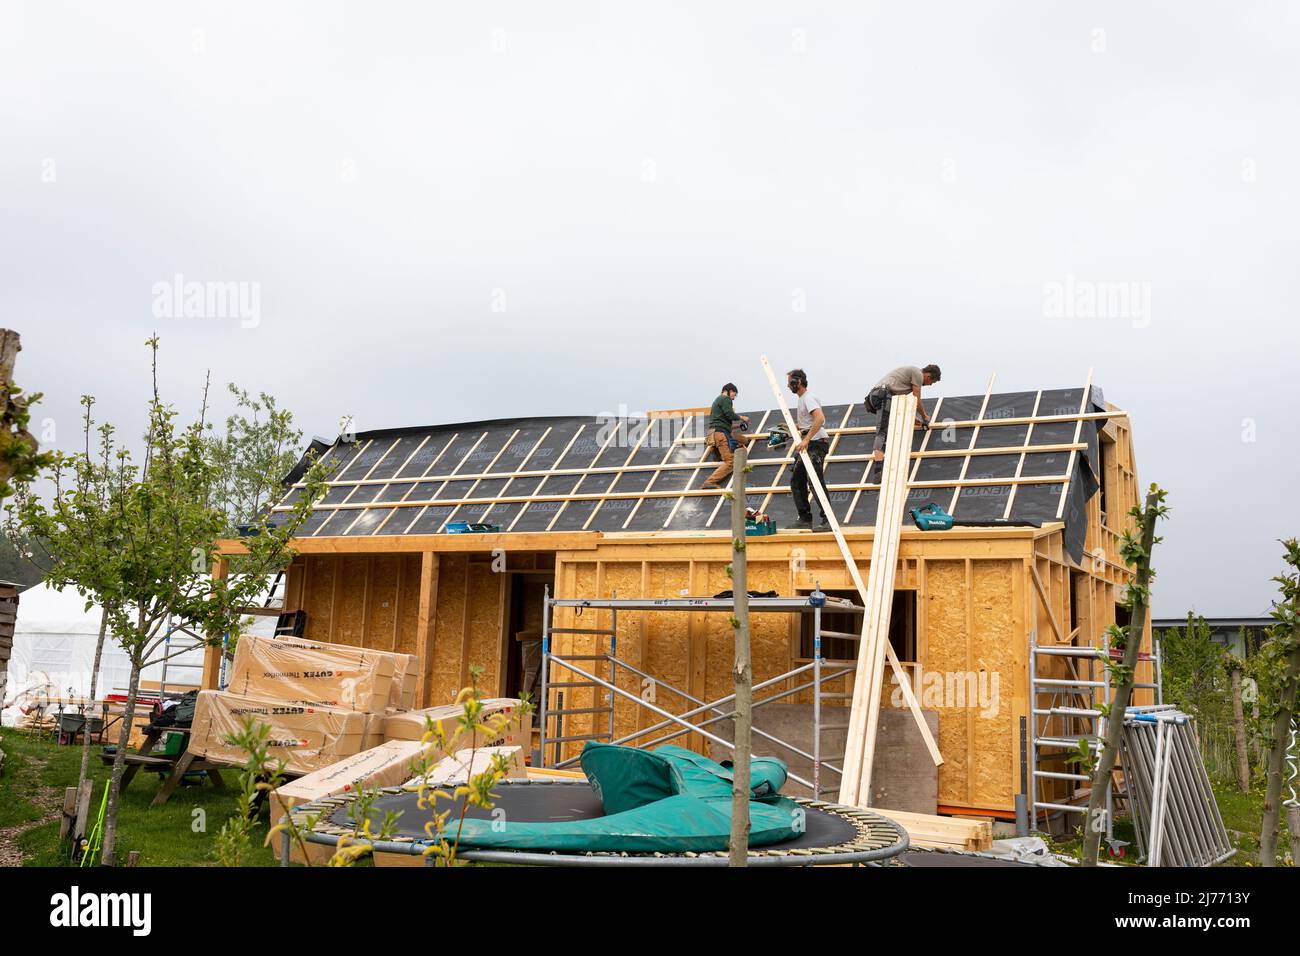 Trabajadores en el techo construyendo una casa ecológica en el pueblo ecológico Oosterwold, Almere, Países Bajos Foto de stock